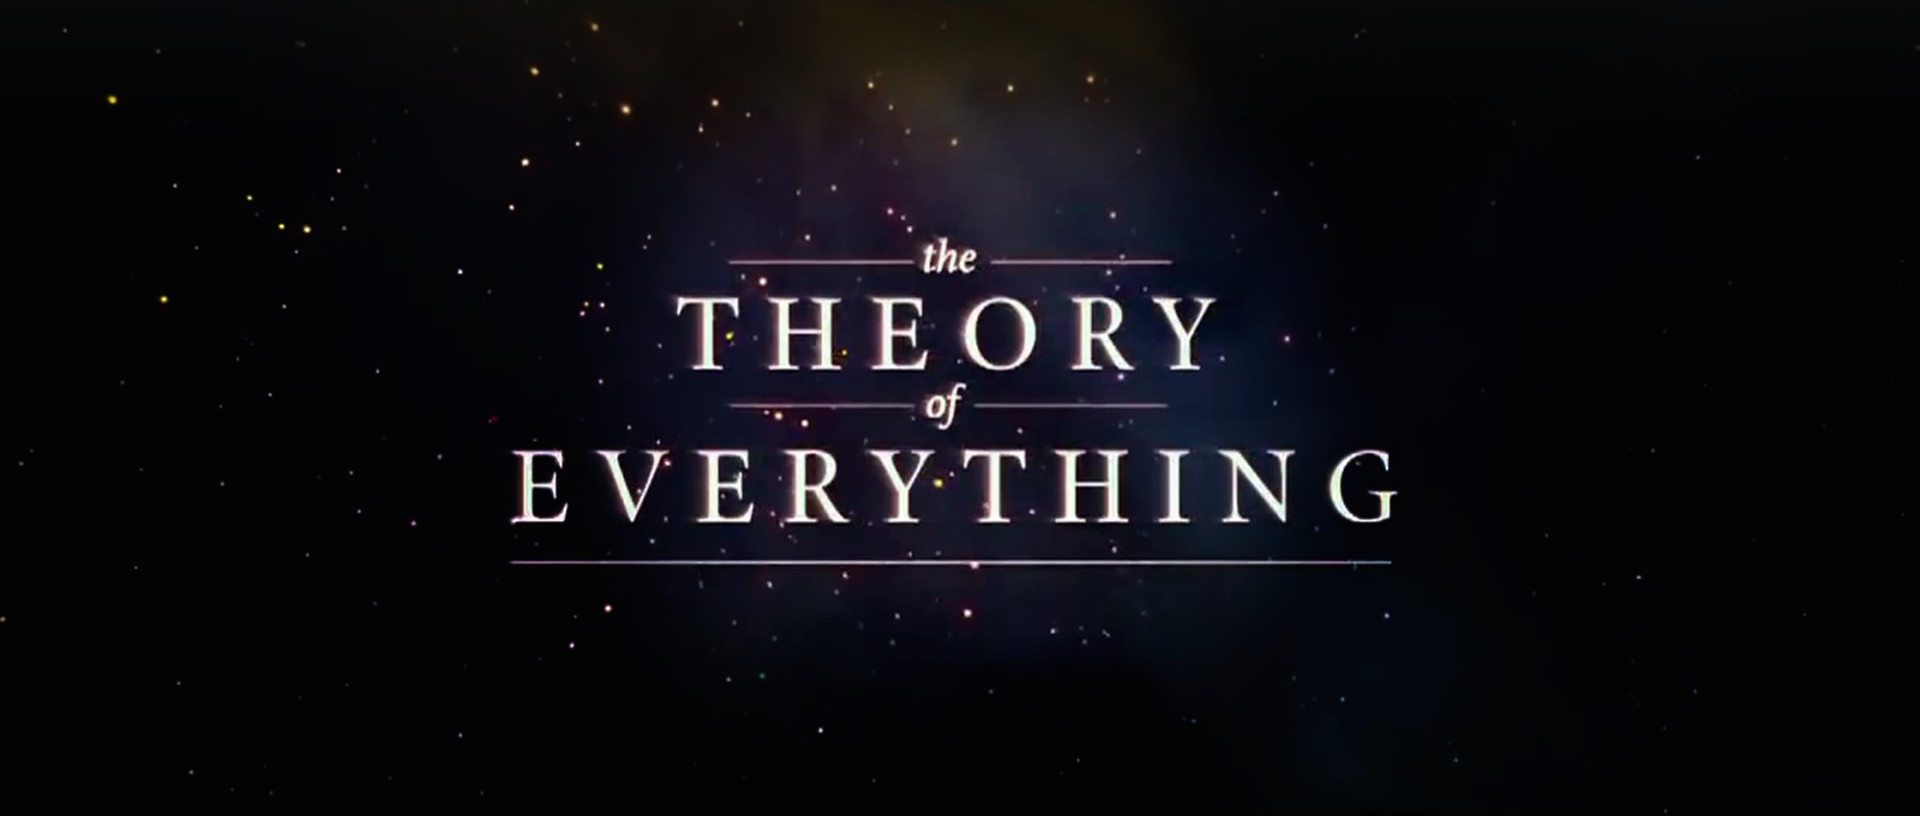 The theory of everything. Theory of everything. Вселенная Стивена Хокинга Постер. Theory of everything управление.